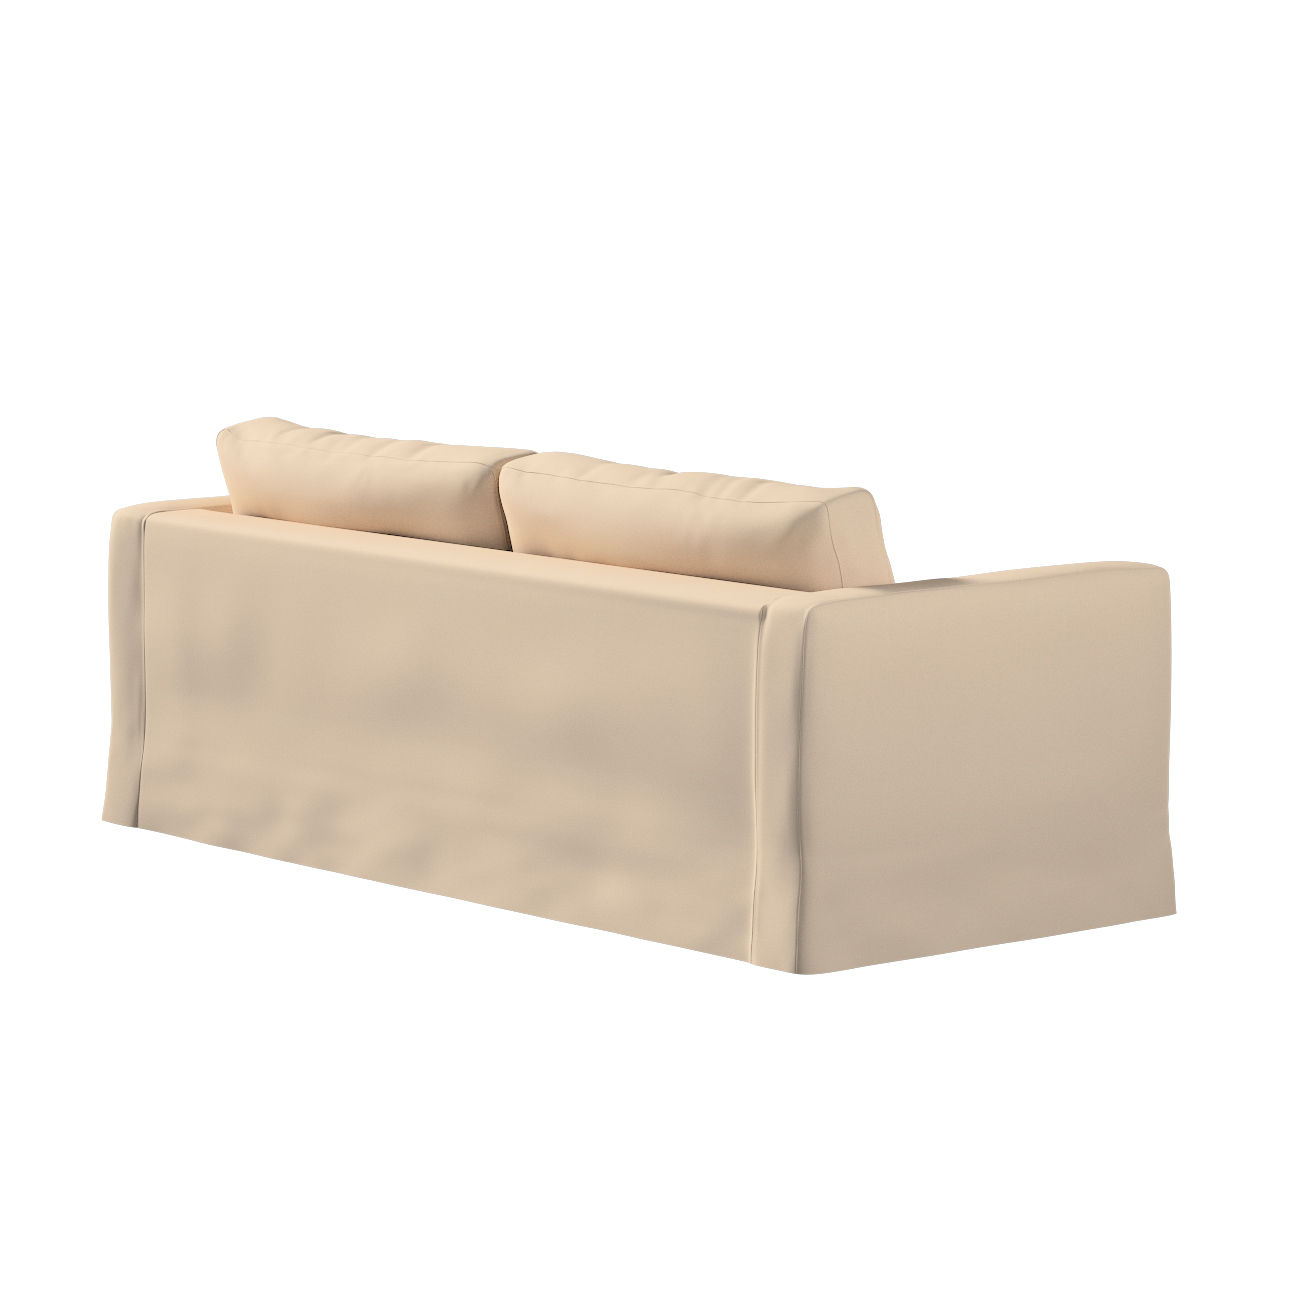 Bezug für Karlstad 3-Sitzer Sofa nicht ausklappbar, lang, creme-beige, Bezu günstig online kaufen